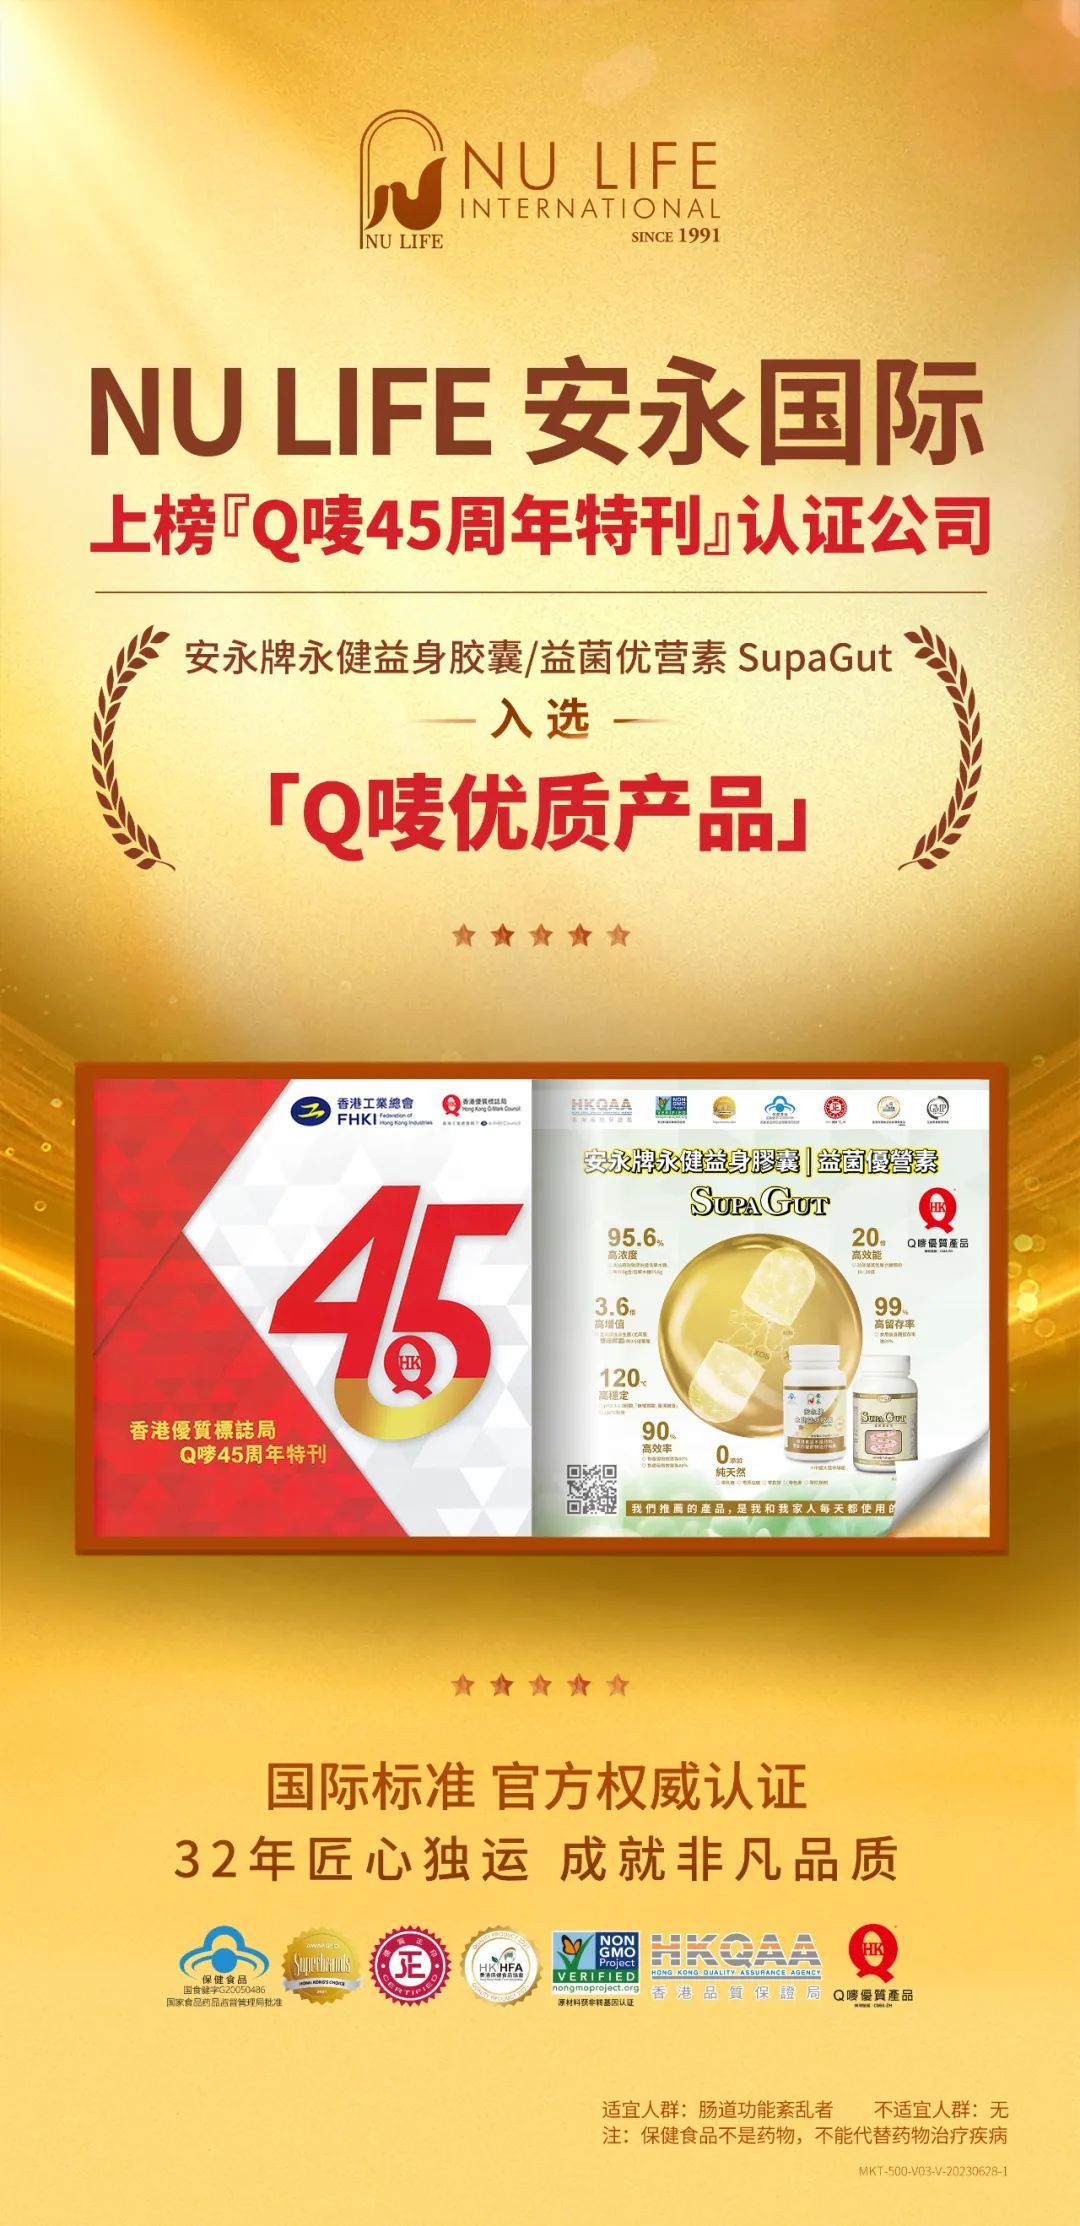 安永NU LIFE上榜「Q唛45周年特刊」认证企业